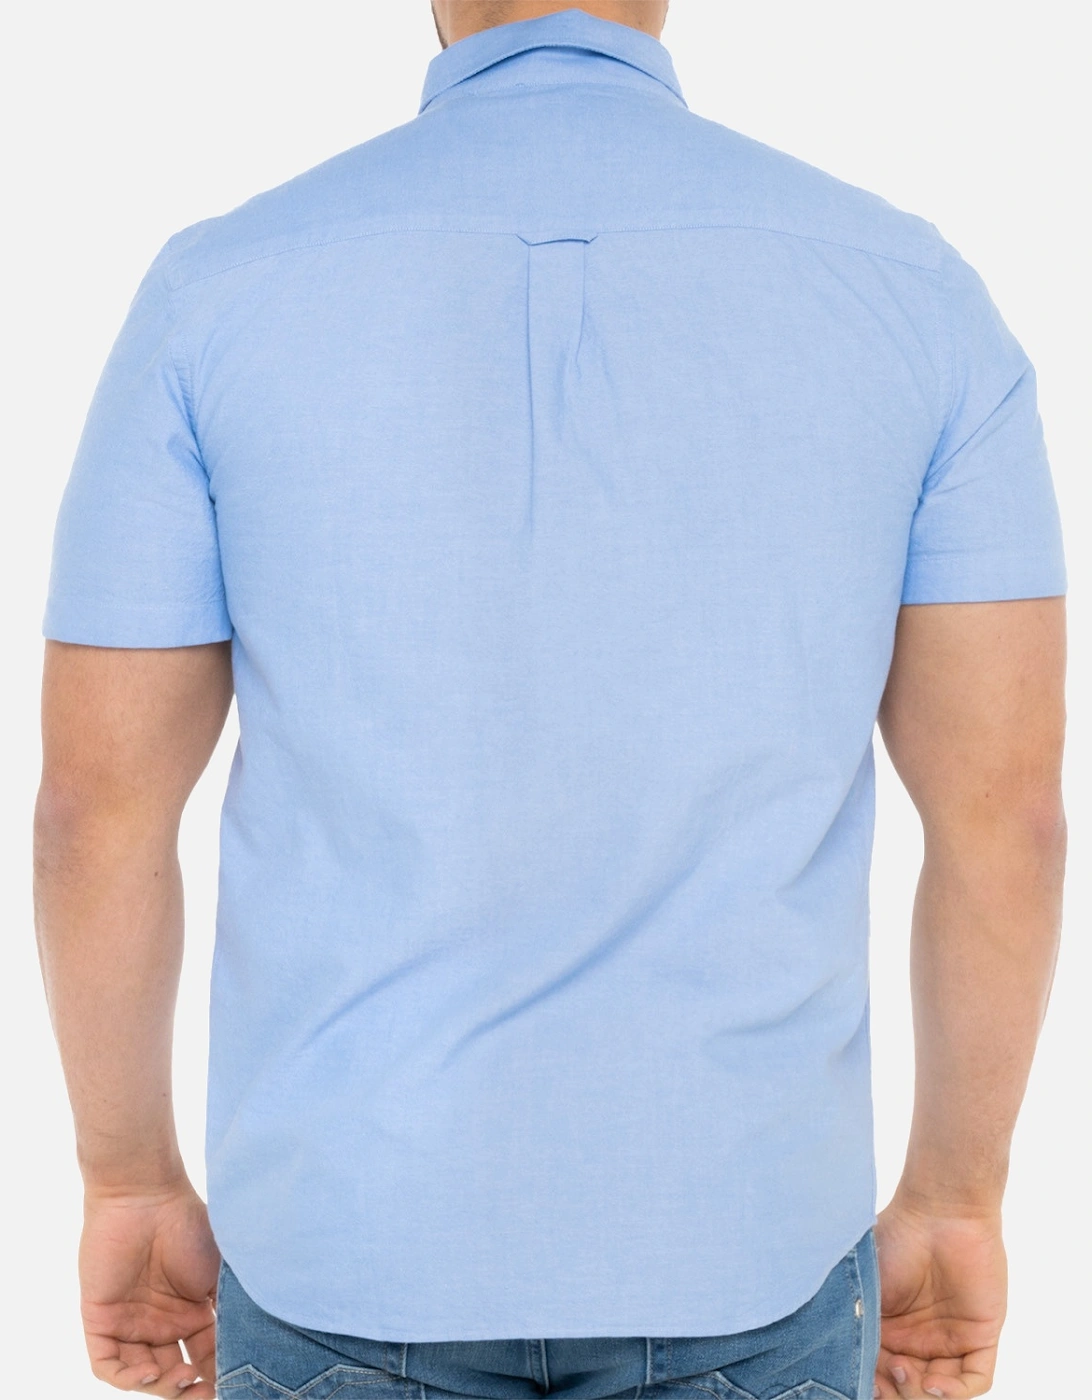 Lyle & Scott Mens Short Sleeve Oxford Shirt (Light Blue)